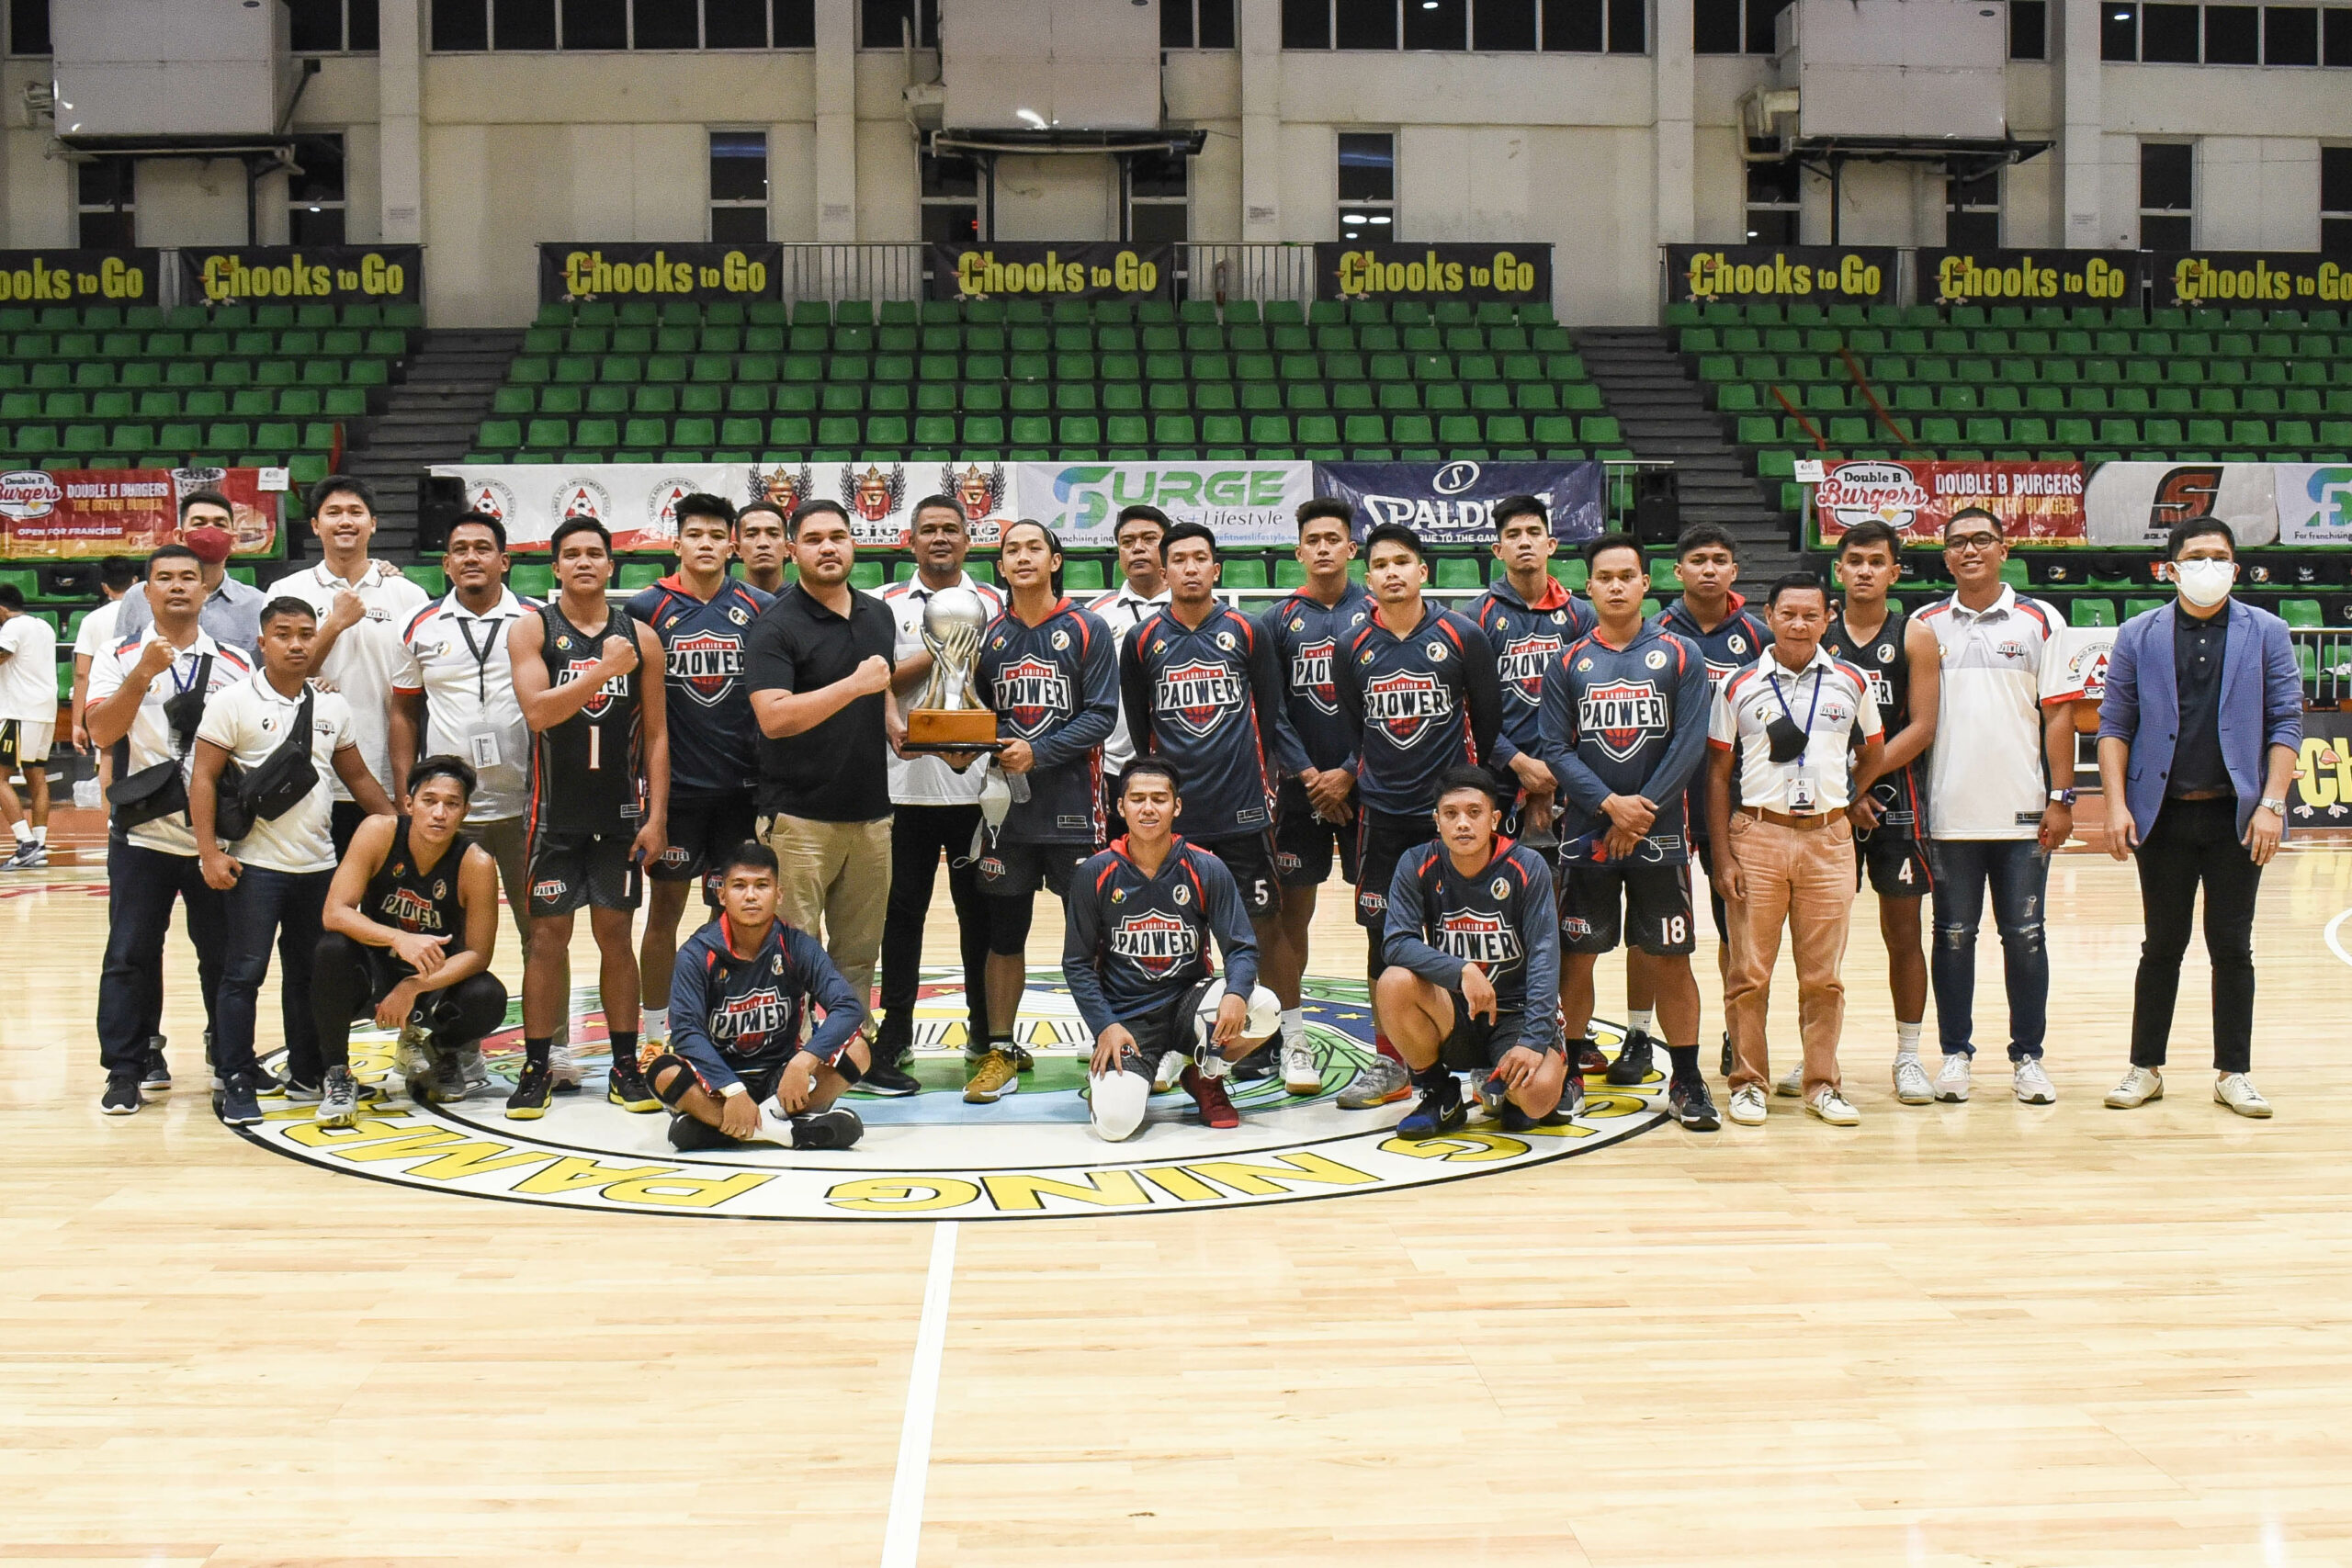 2021-Chooks-NBL-Pampanga-vs-La-Union-1st-Runner-Up-La-Union-scaled Encho Serrano leads Pampanga to back-to-back NBL titles Basketball NBL News  - philippine sports news